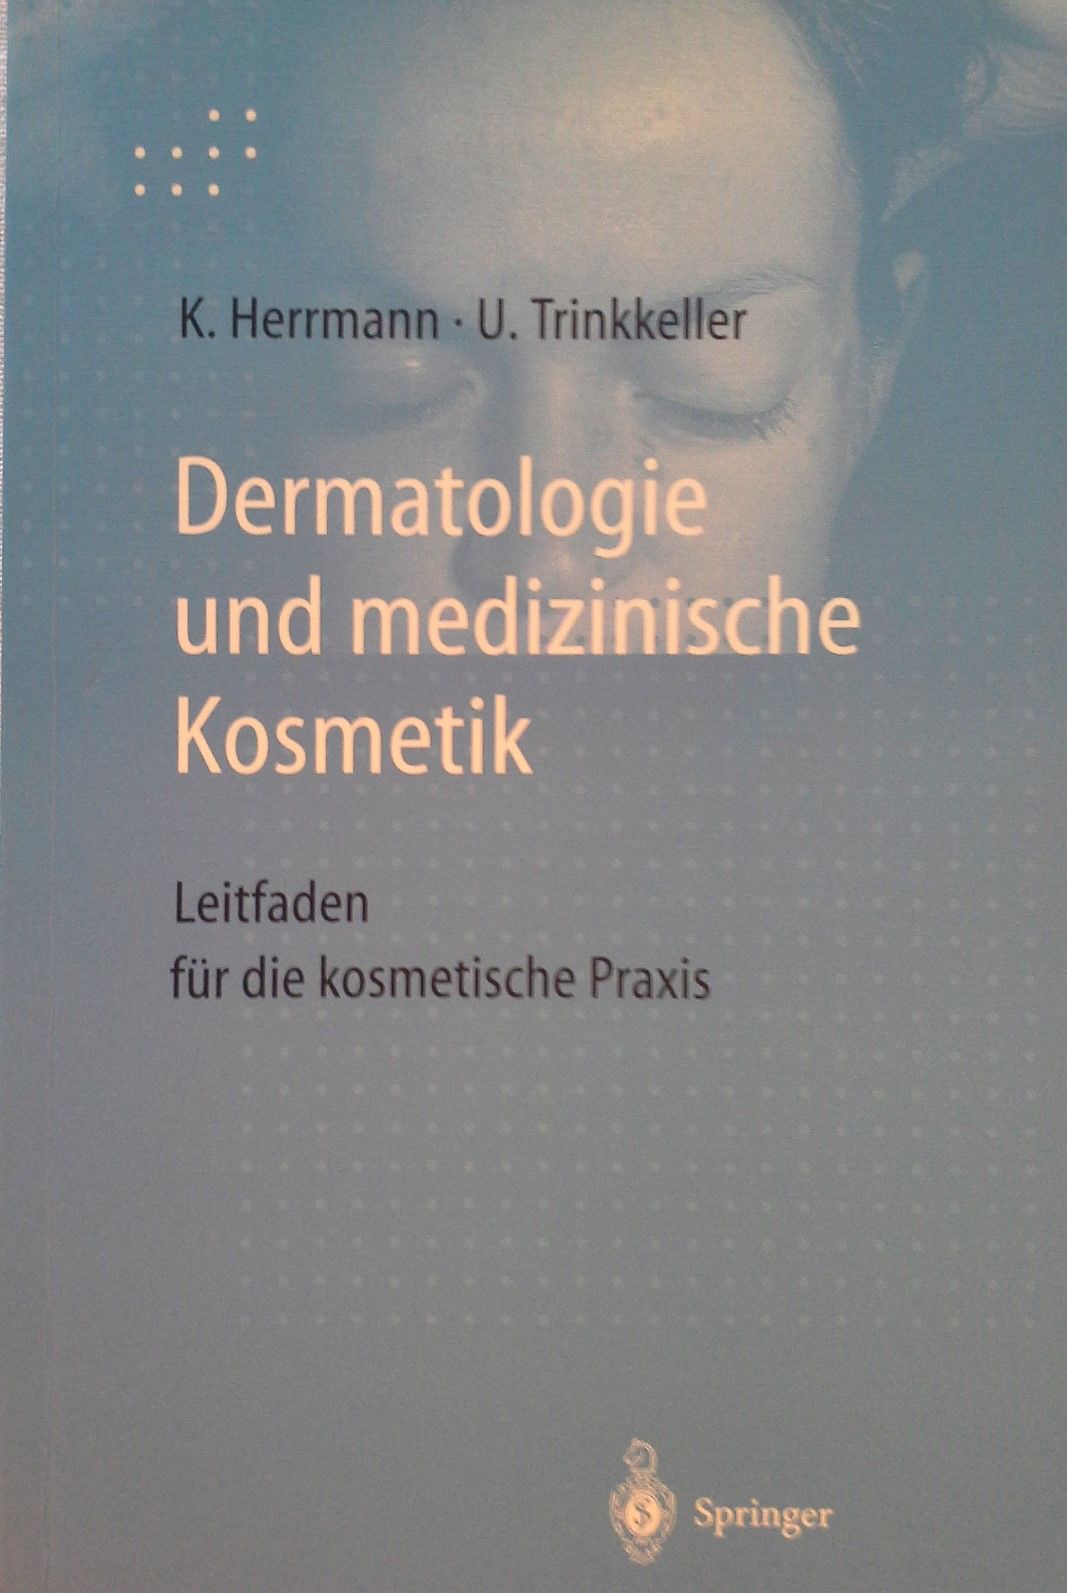 Dermatologie und medizinische Kosmetik : Leitfaden für die kosmetische Praxis. K. Herrmann ; U. Trinkkeller - Herrmann, Konrad und Ute Trinkkeller